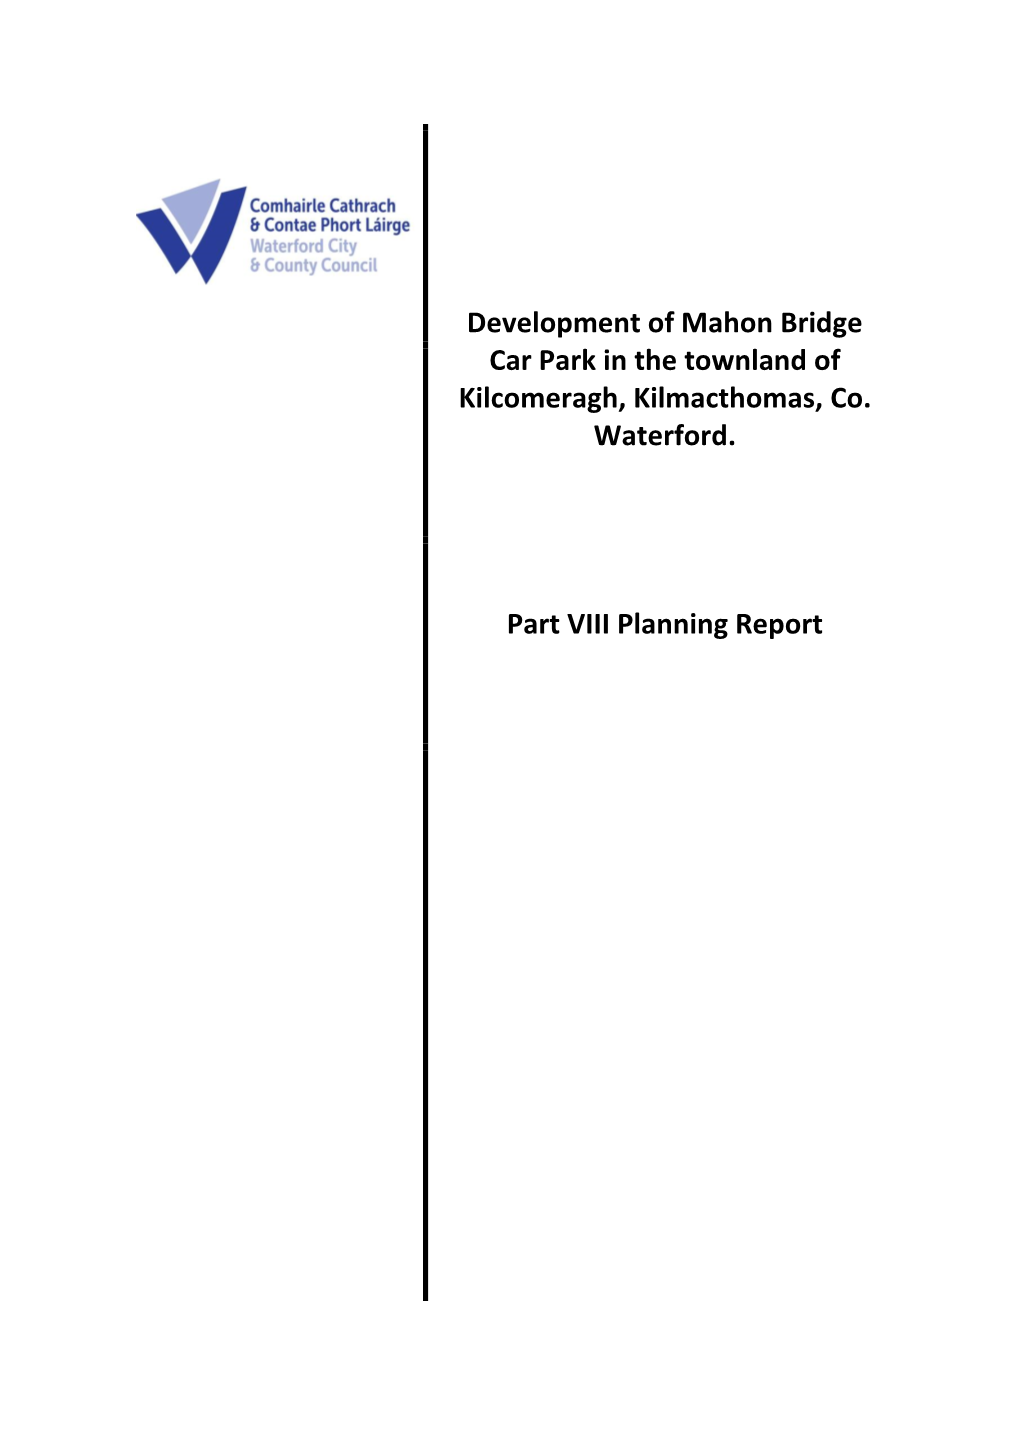 21072021Part VIII Report Mahon Bridge Car Park Devolopment